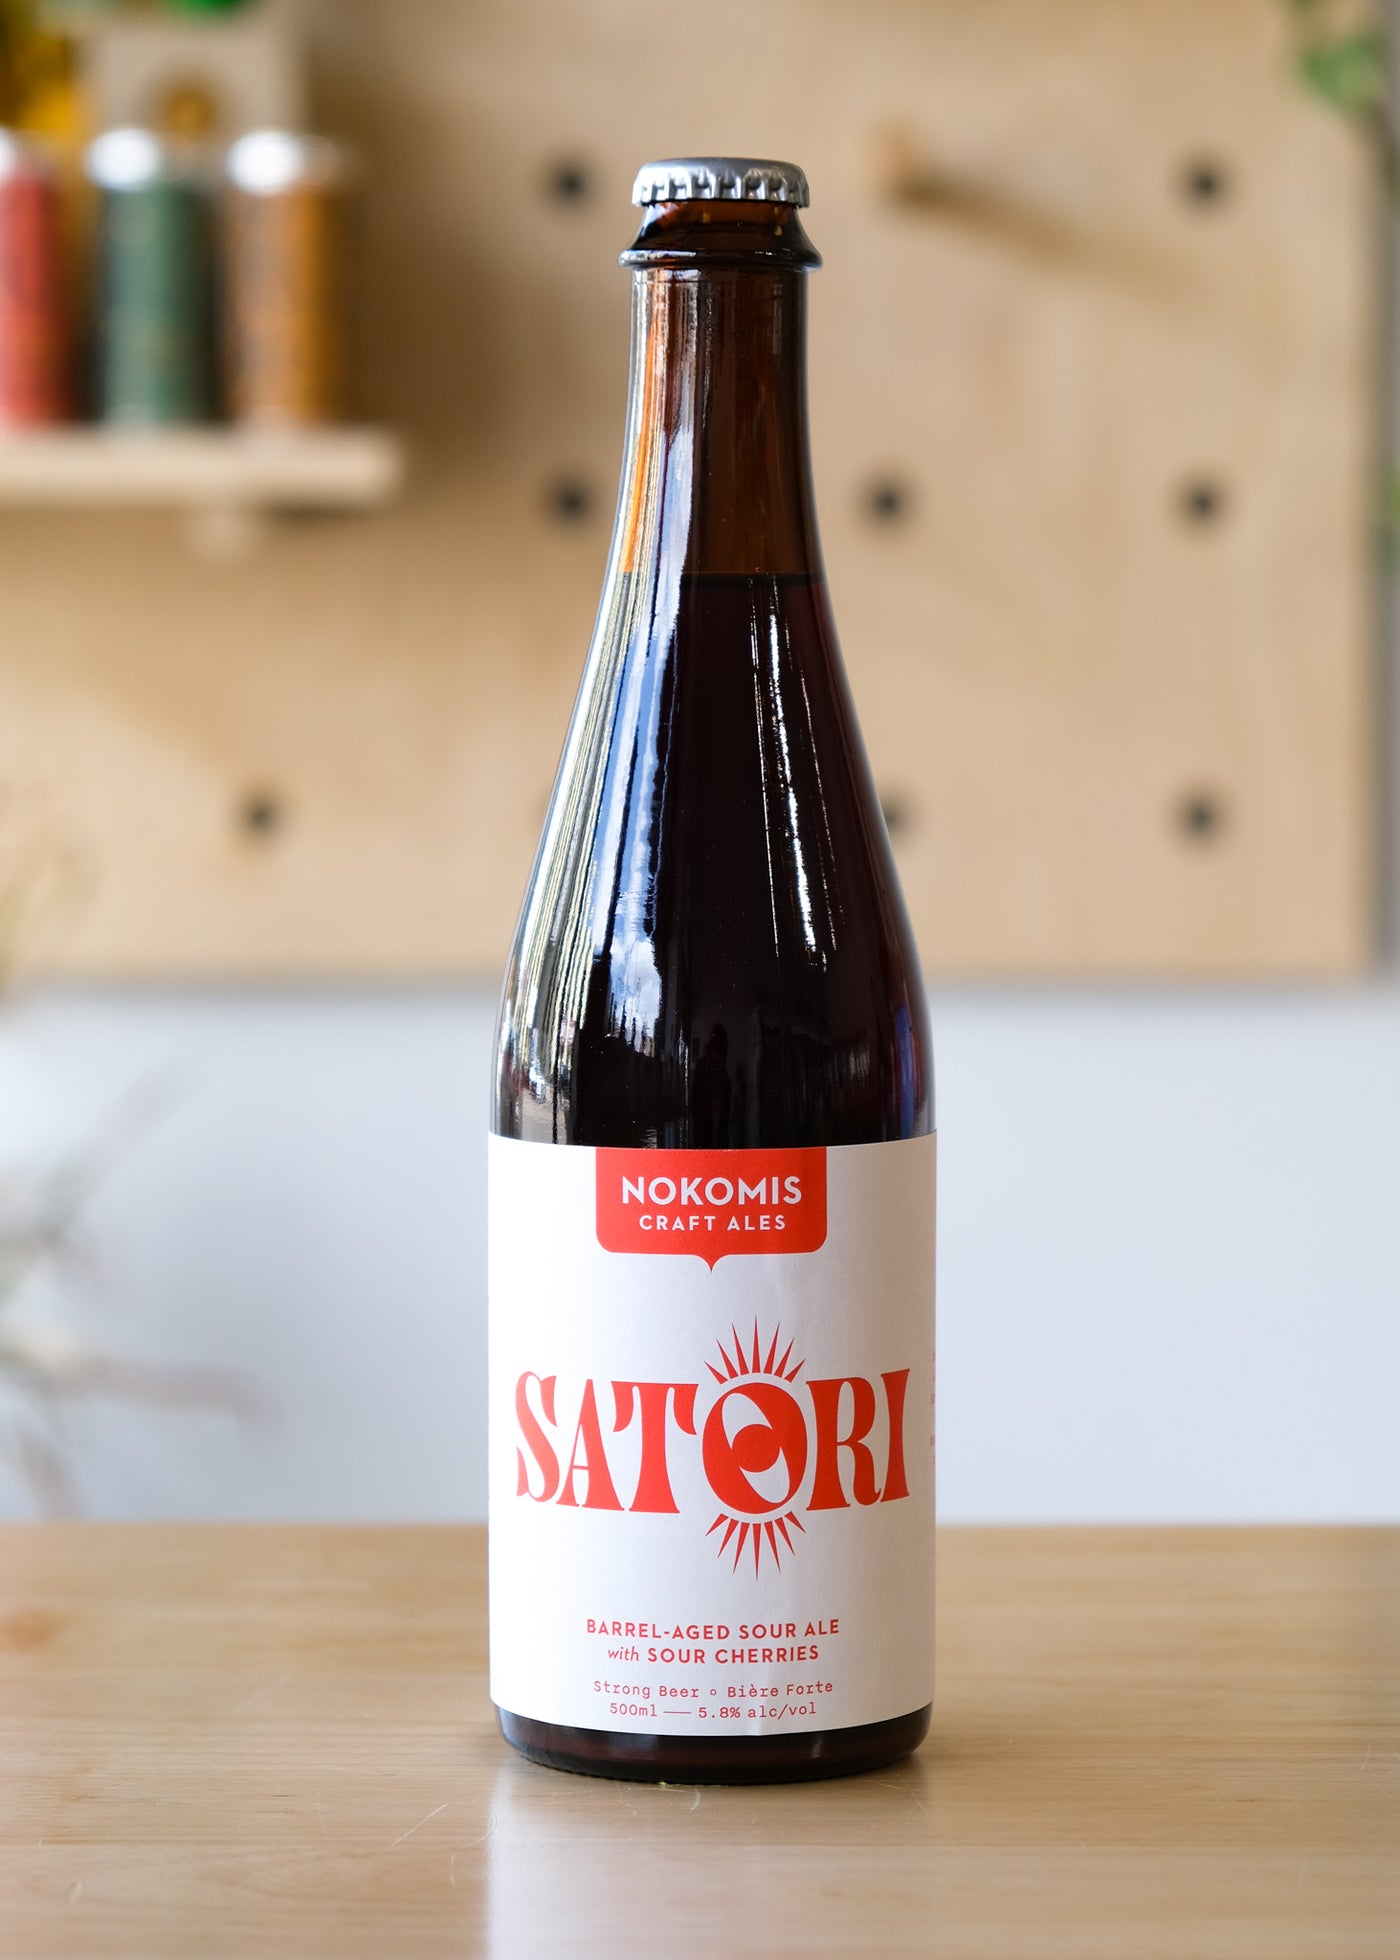 SATORI | Barrel-Aged Sour Ale w/ Sour Cherries